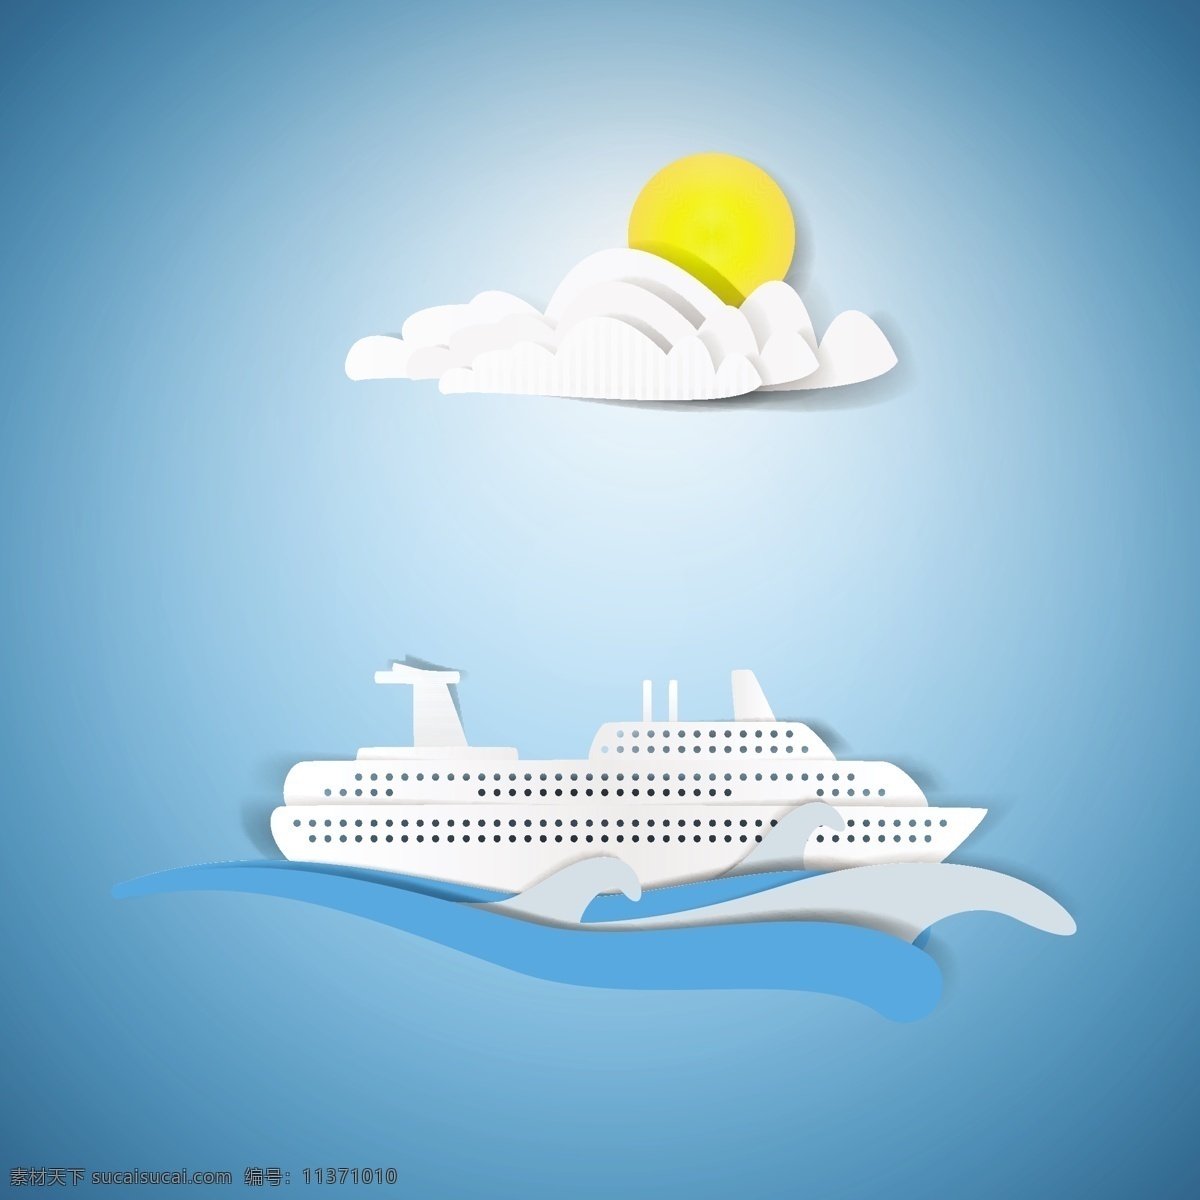 太阳 邮轮 标贴 画 矢量 eps格式 海洋 卡通 旅游 云朵 游轮素材 标贴画 矢量图 其他矢量图